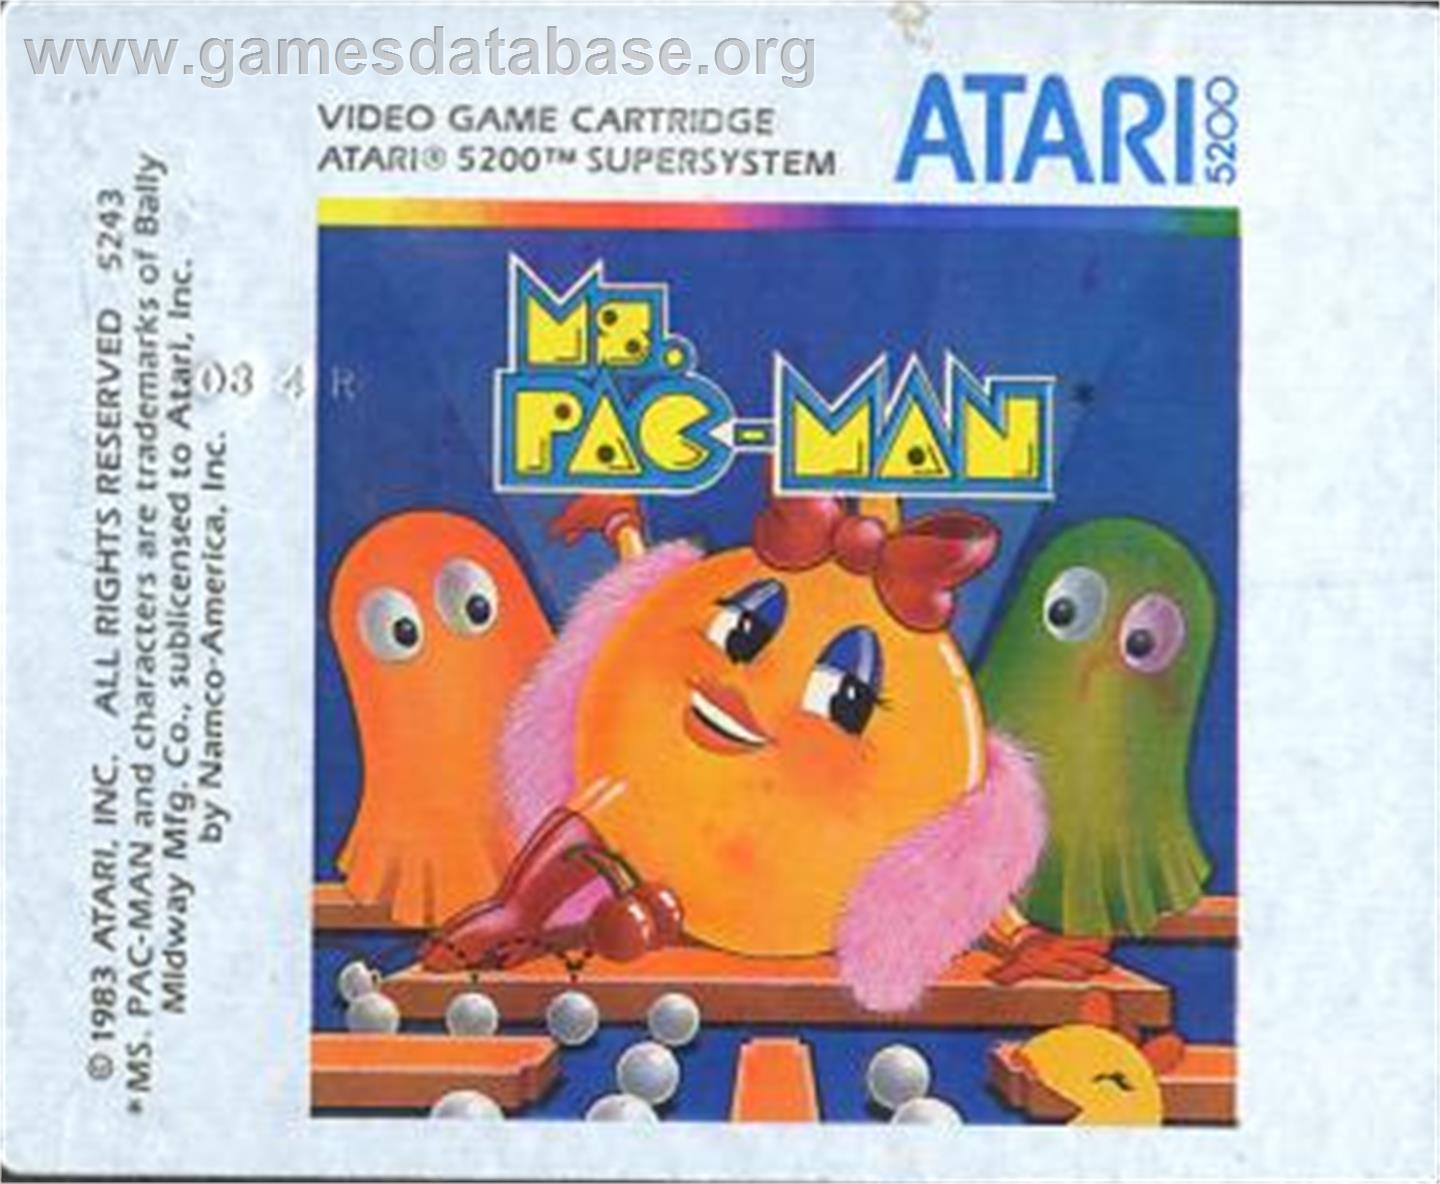 Ms. Pac-Man - Atari 5200 - Artwork - Cartridge Top